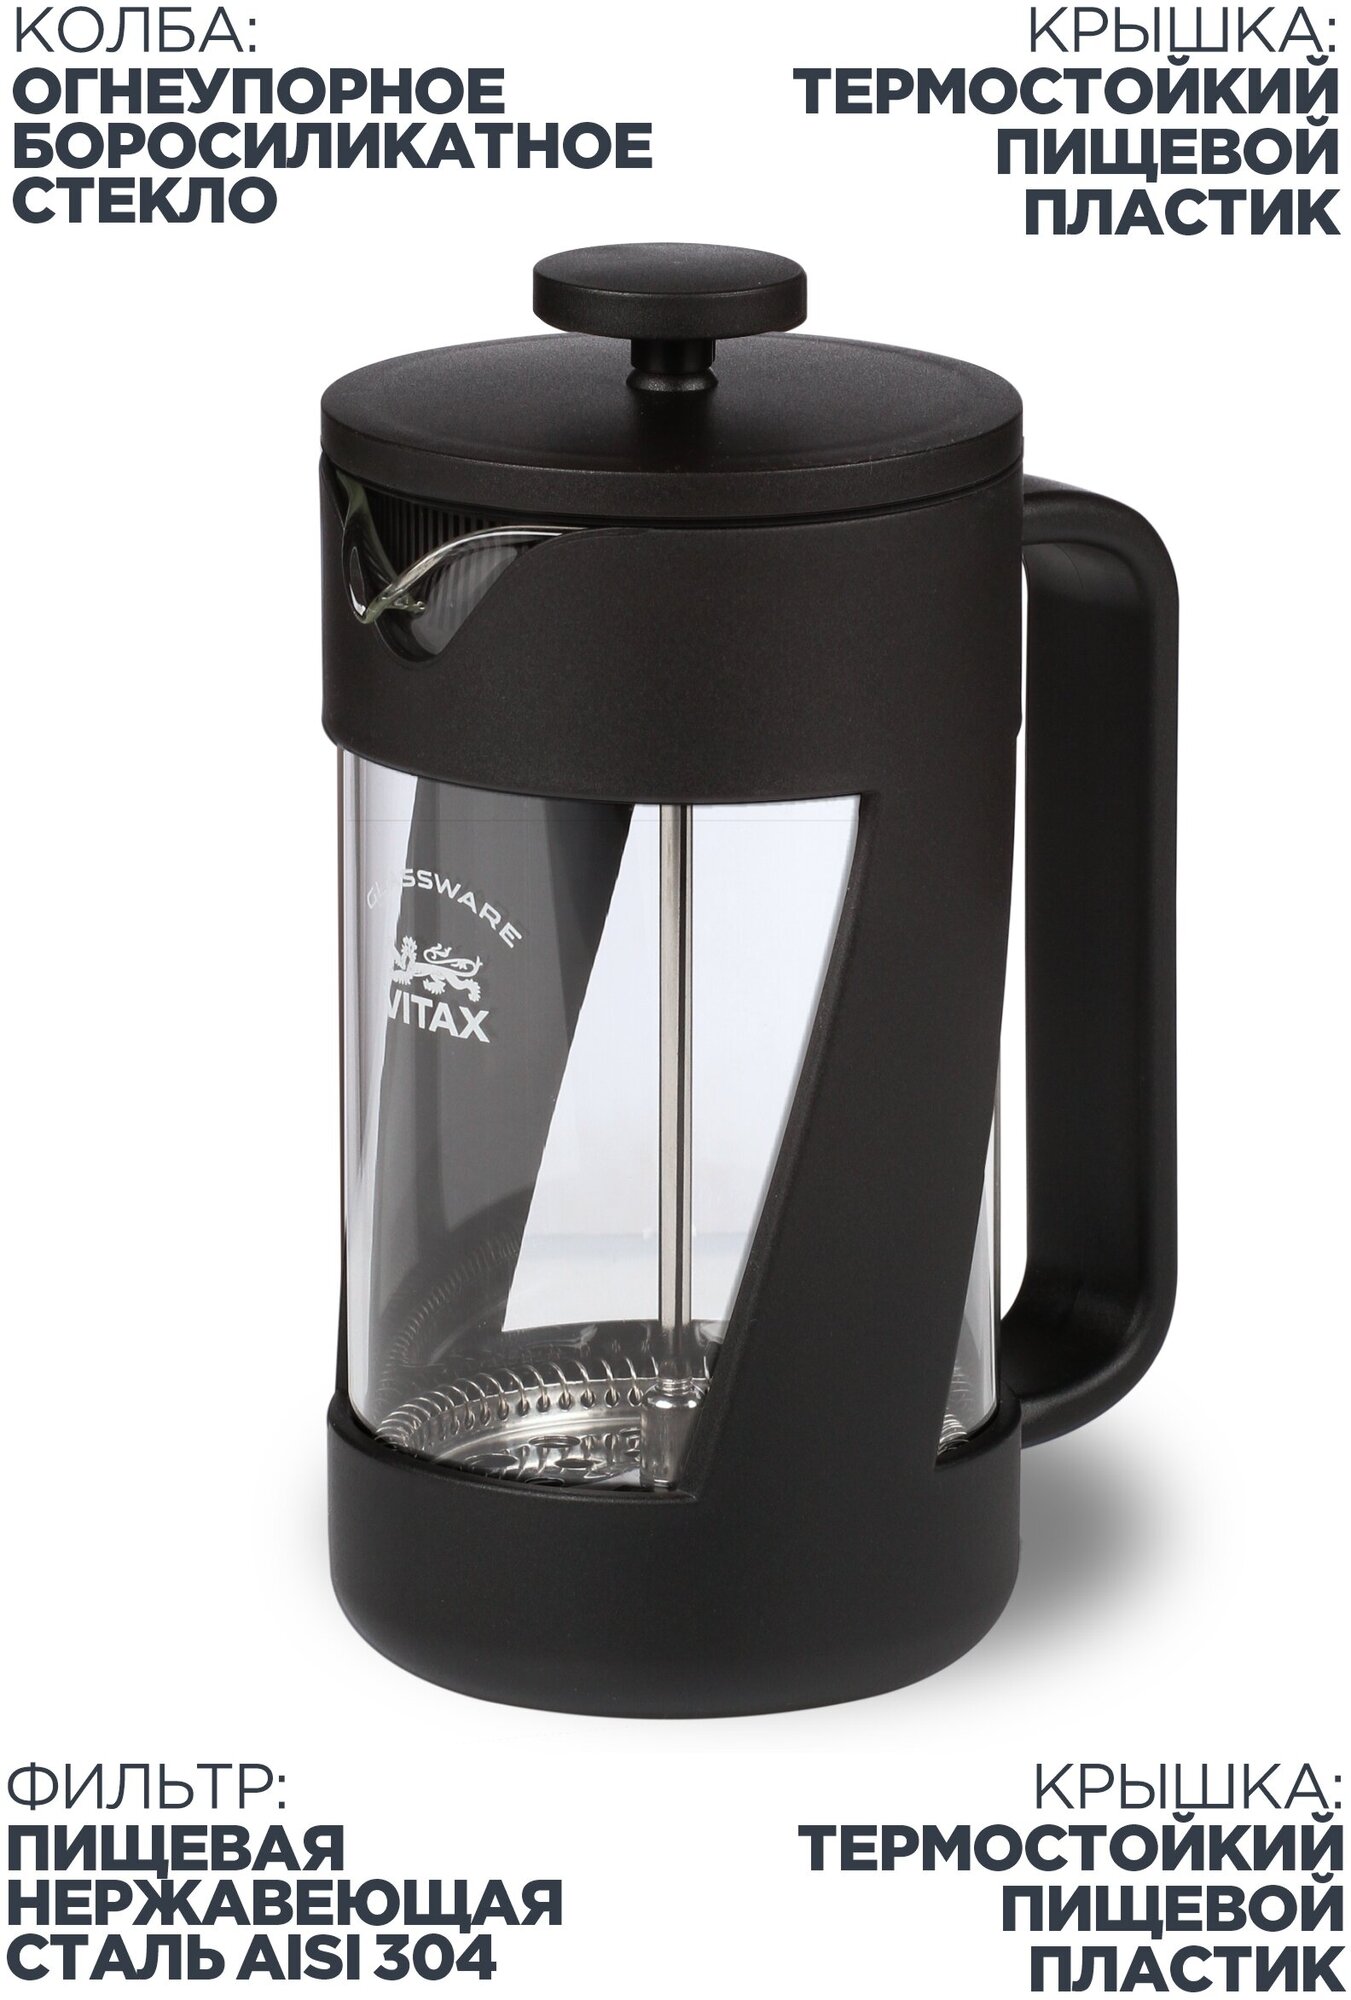 Френч-пресс, заварочный чайник объемом 600 мл для заваривания чая и приготовления напитков из молотого кофе.